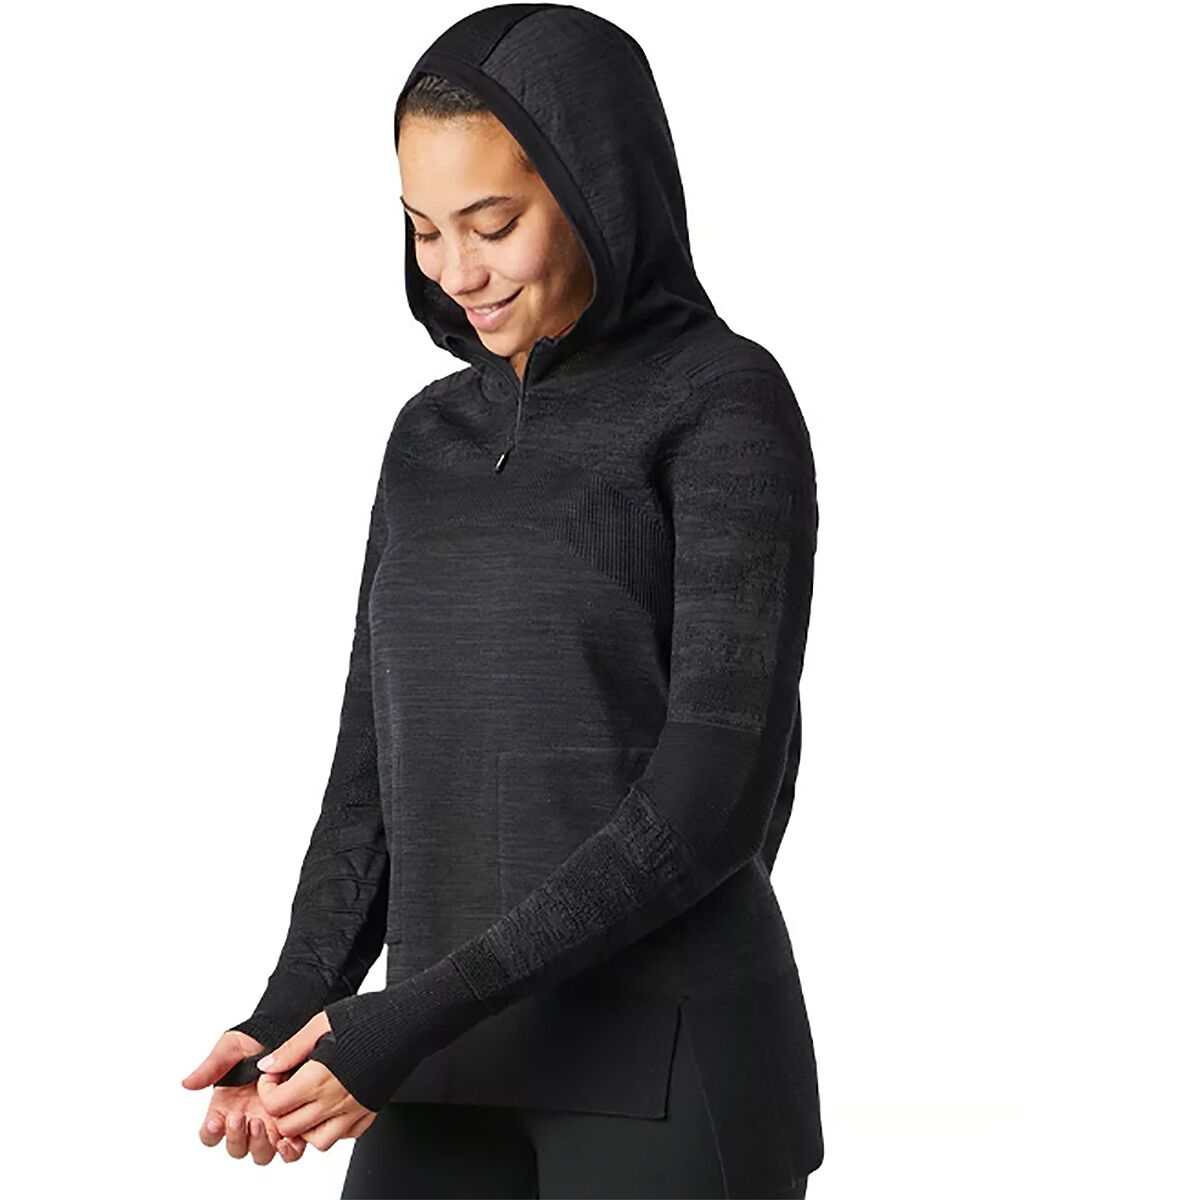 Intraknit Merino Sport Fleece Pullover - Women